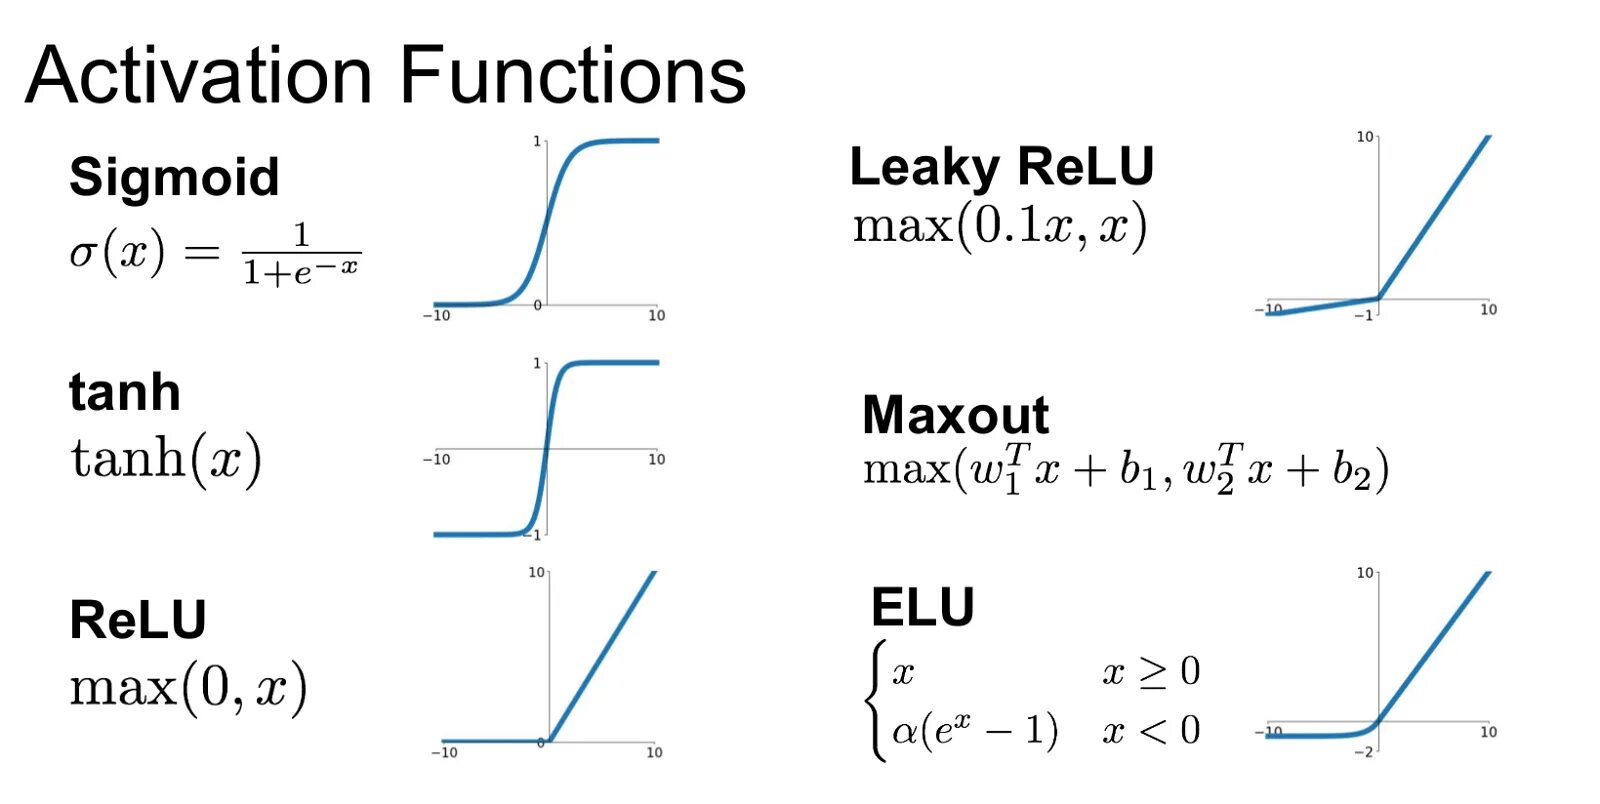 Functioning posts. Relu функция активации. Гиперболический тангенс функция активации. Функции активации нейронных сетей графики. Sigmoid функция активации.